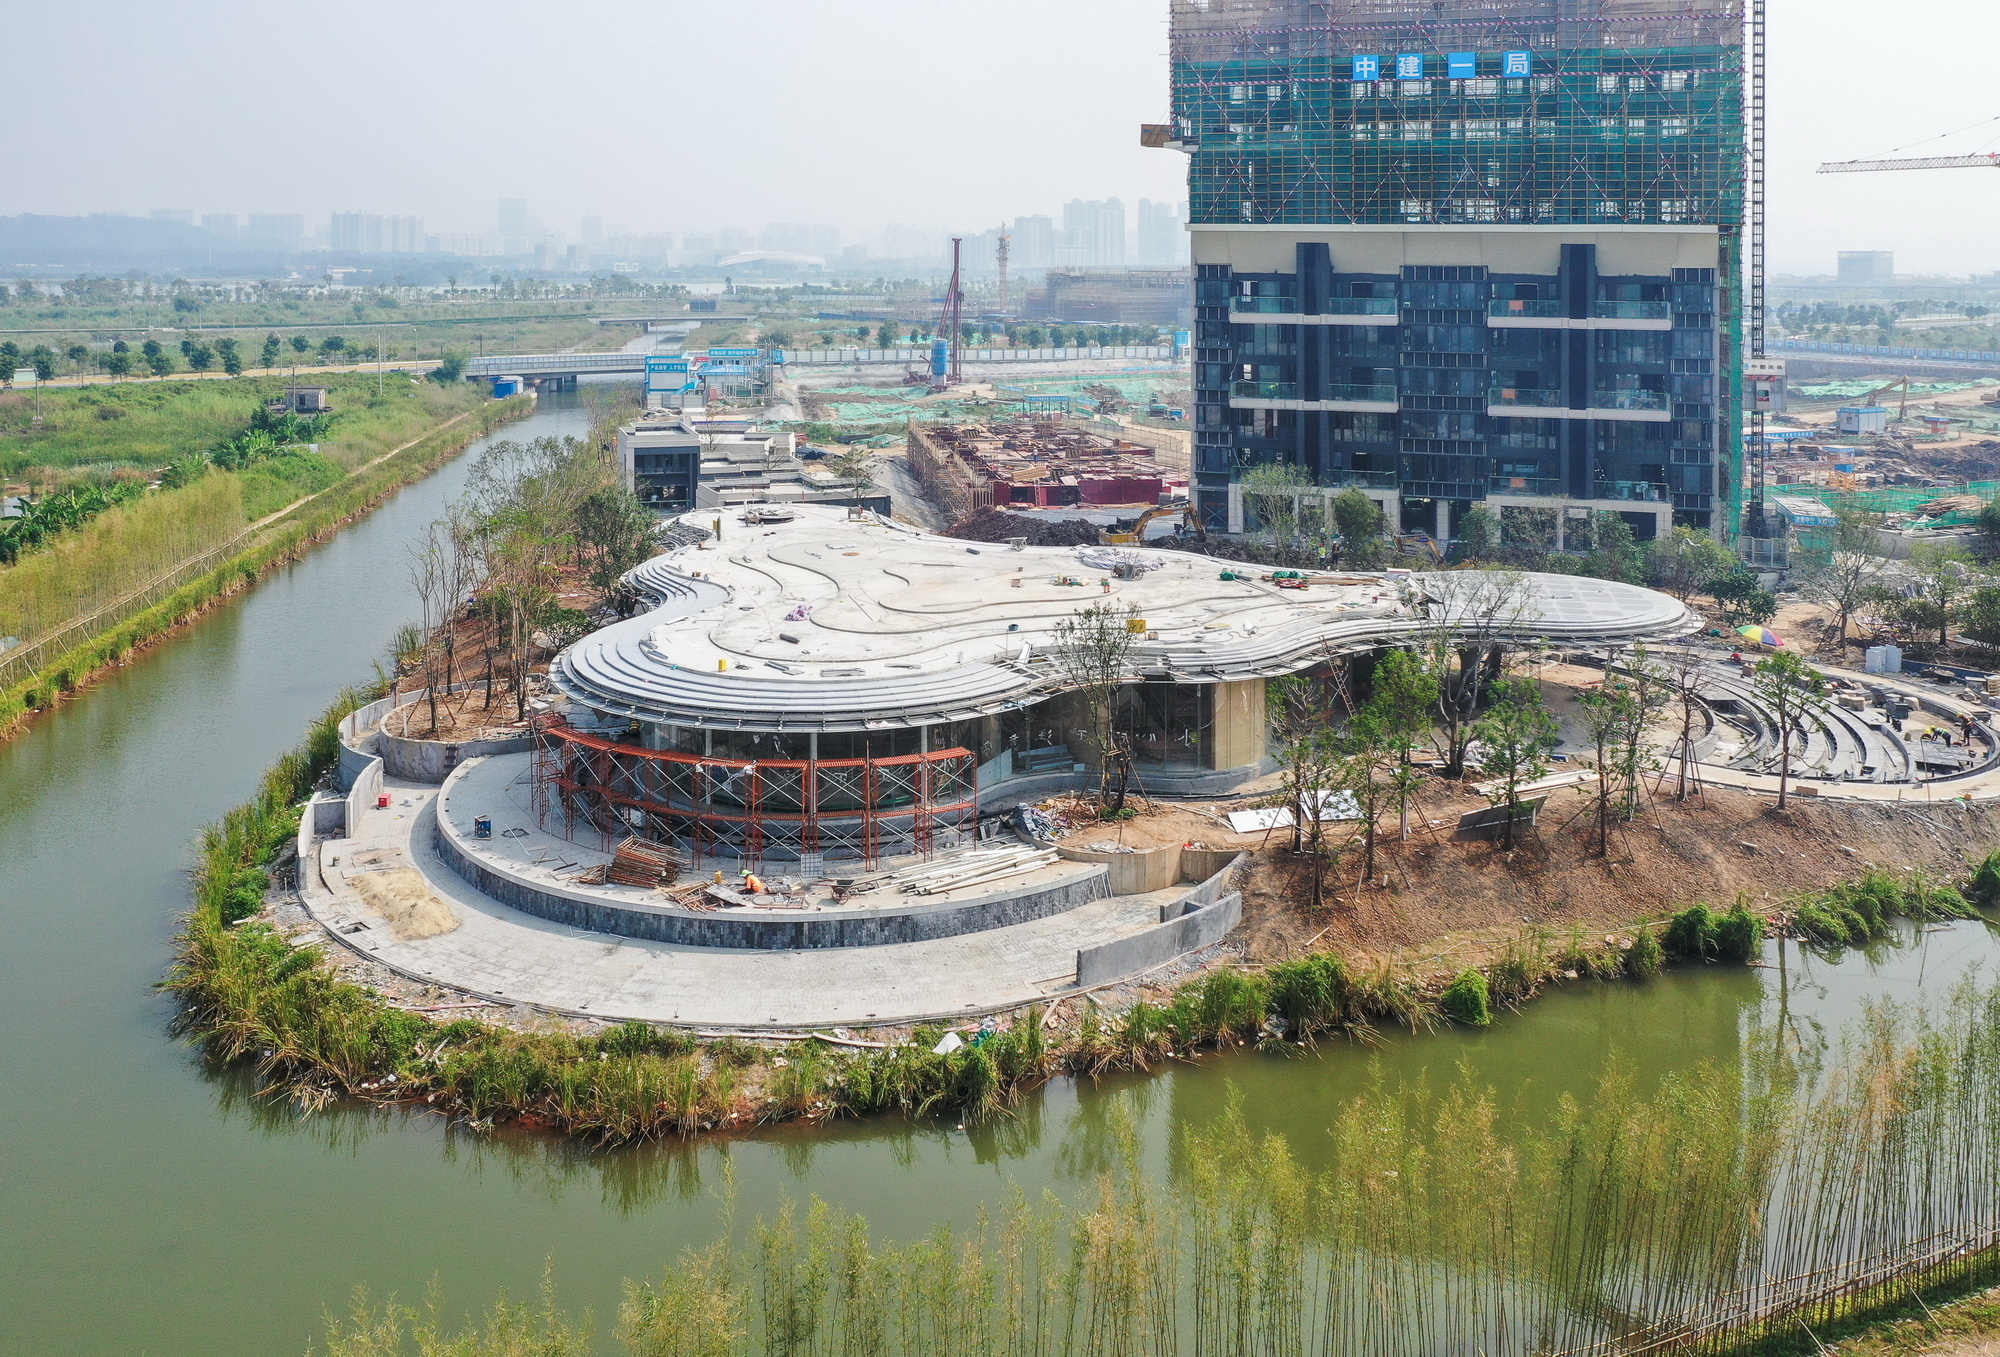 广州明珠工业园,园区规划|产业园区规划设计与策划咨询知名品牌-博为国际规划咨询集团